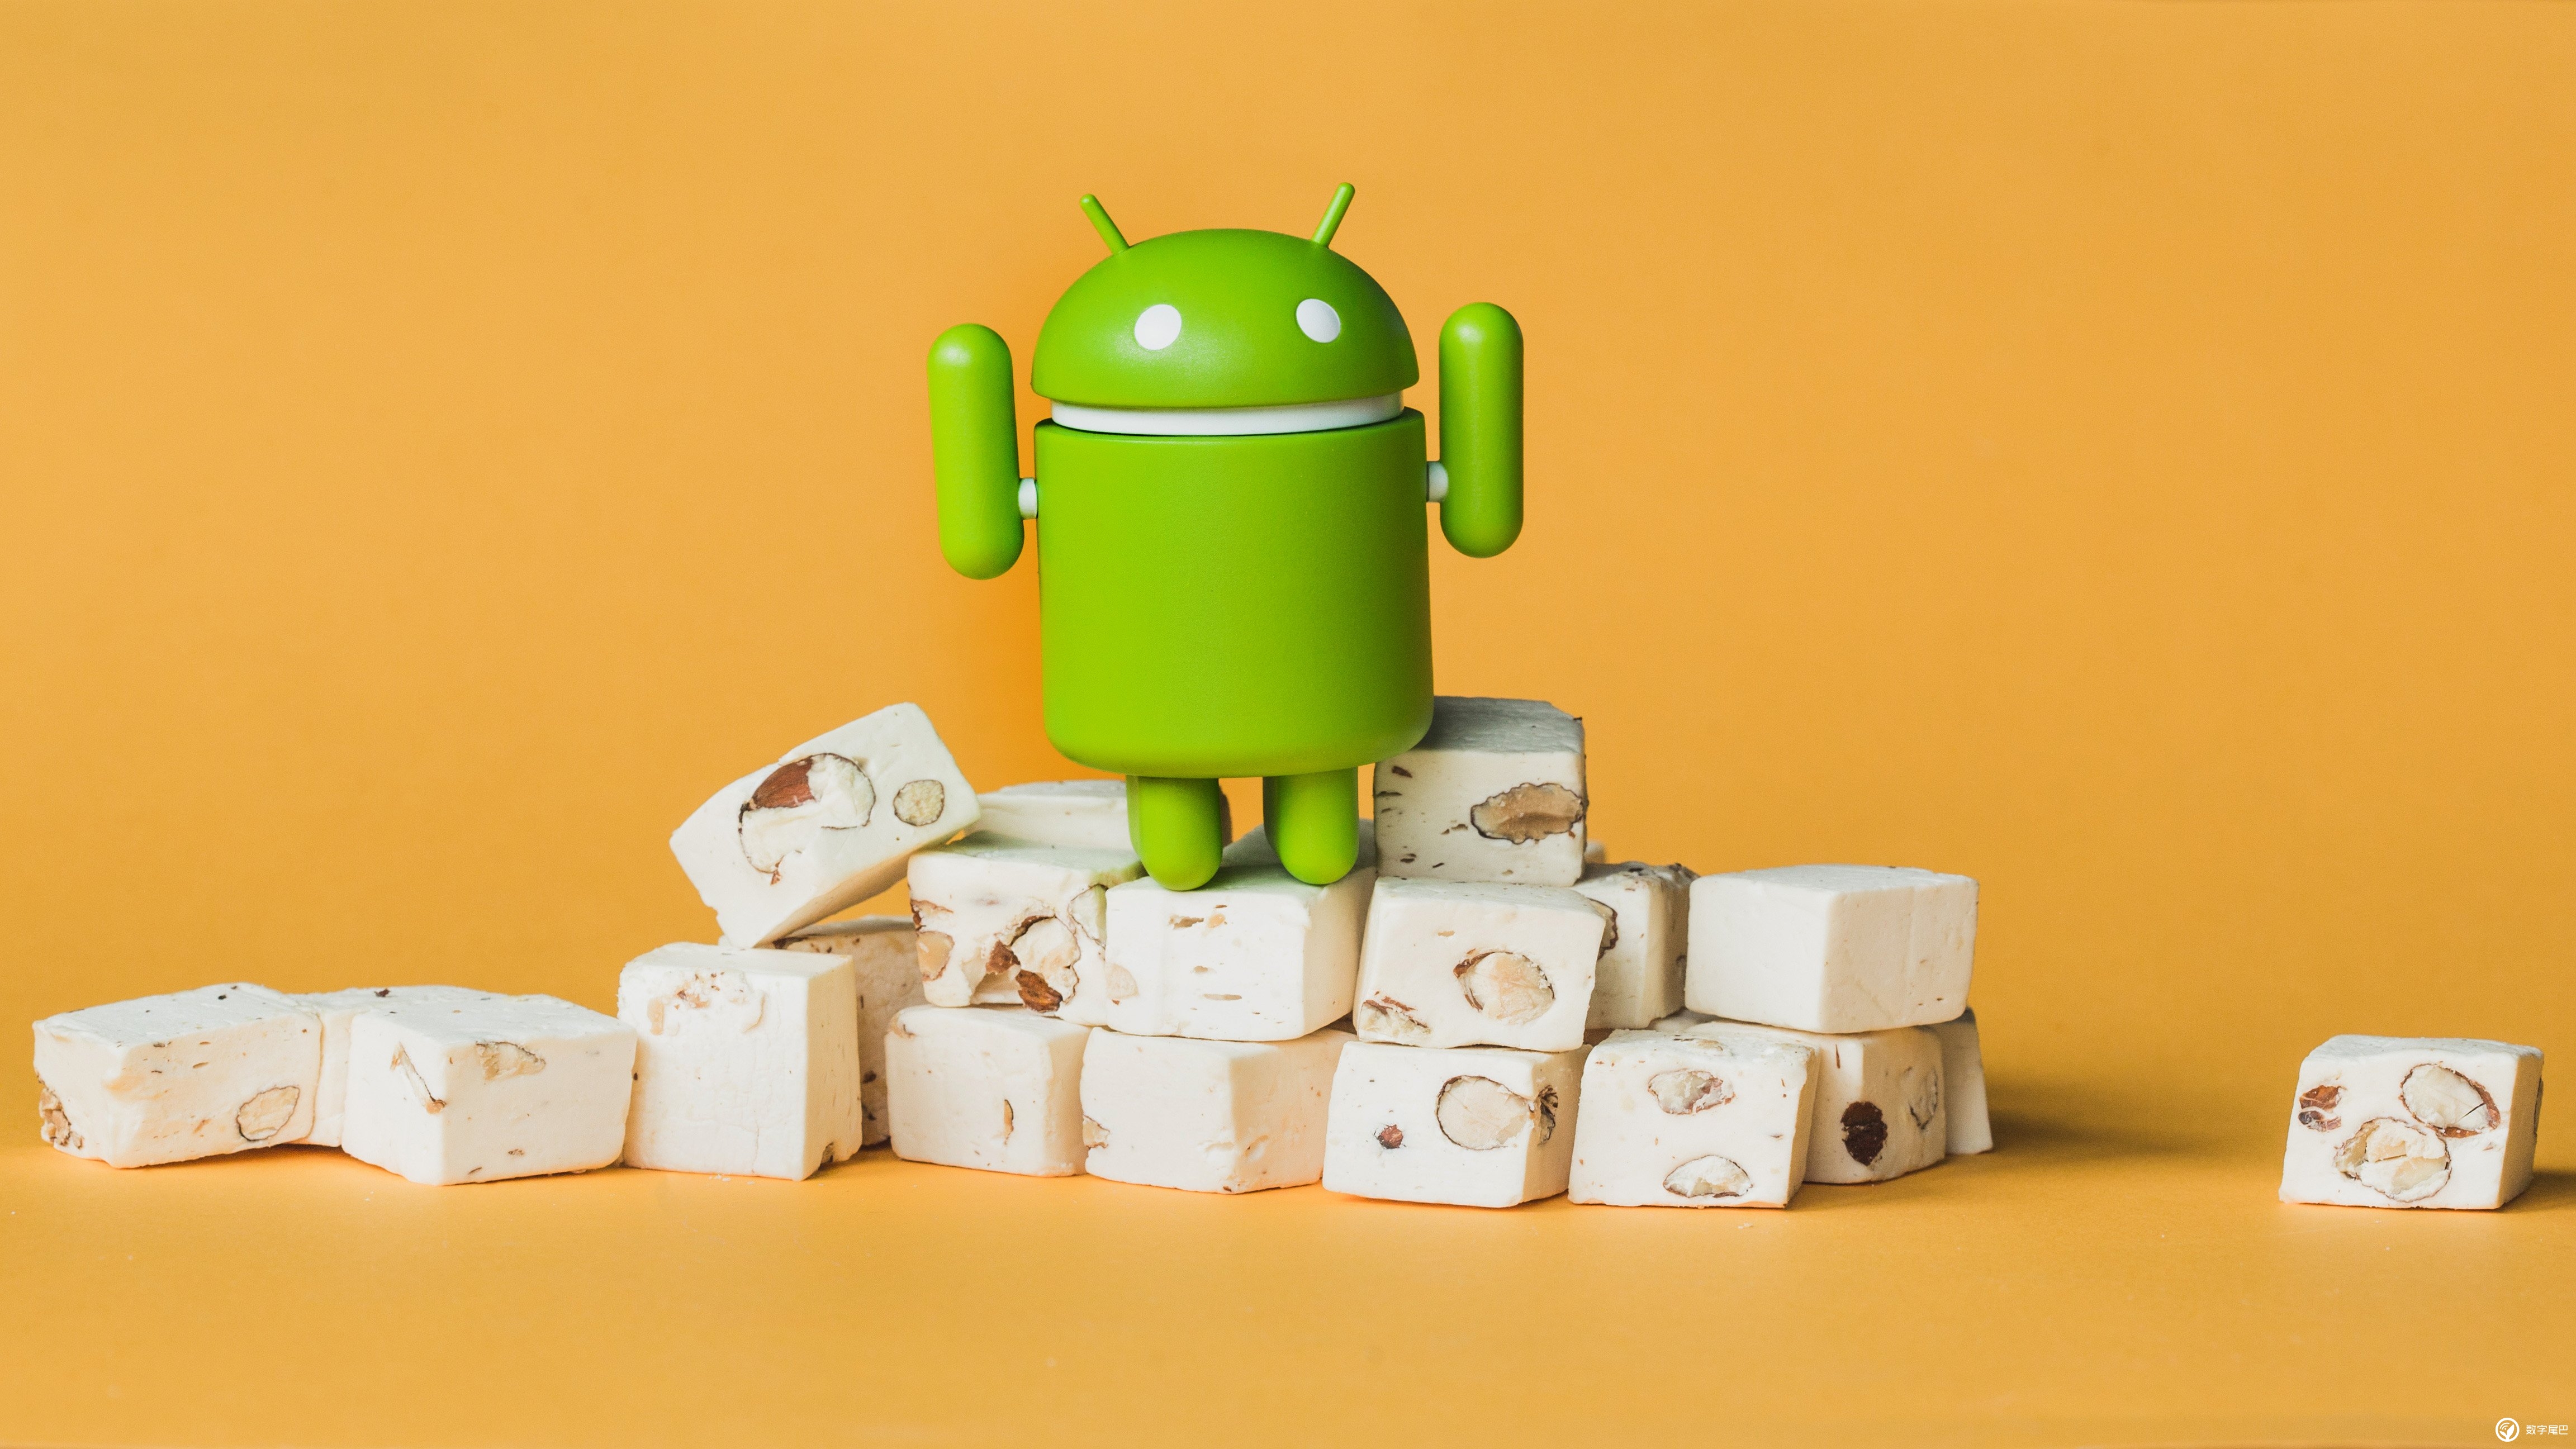 Android9.0：朴素扎实且流畅无阻，如何备份及寻找合适 ROM 重回美好岁月  第4张